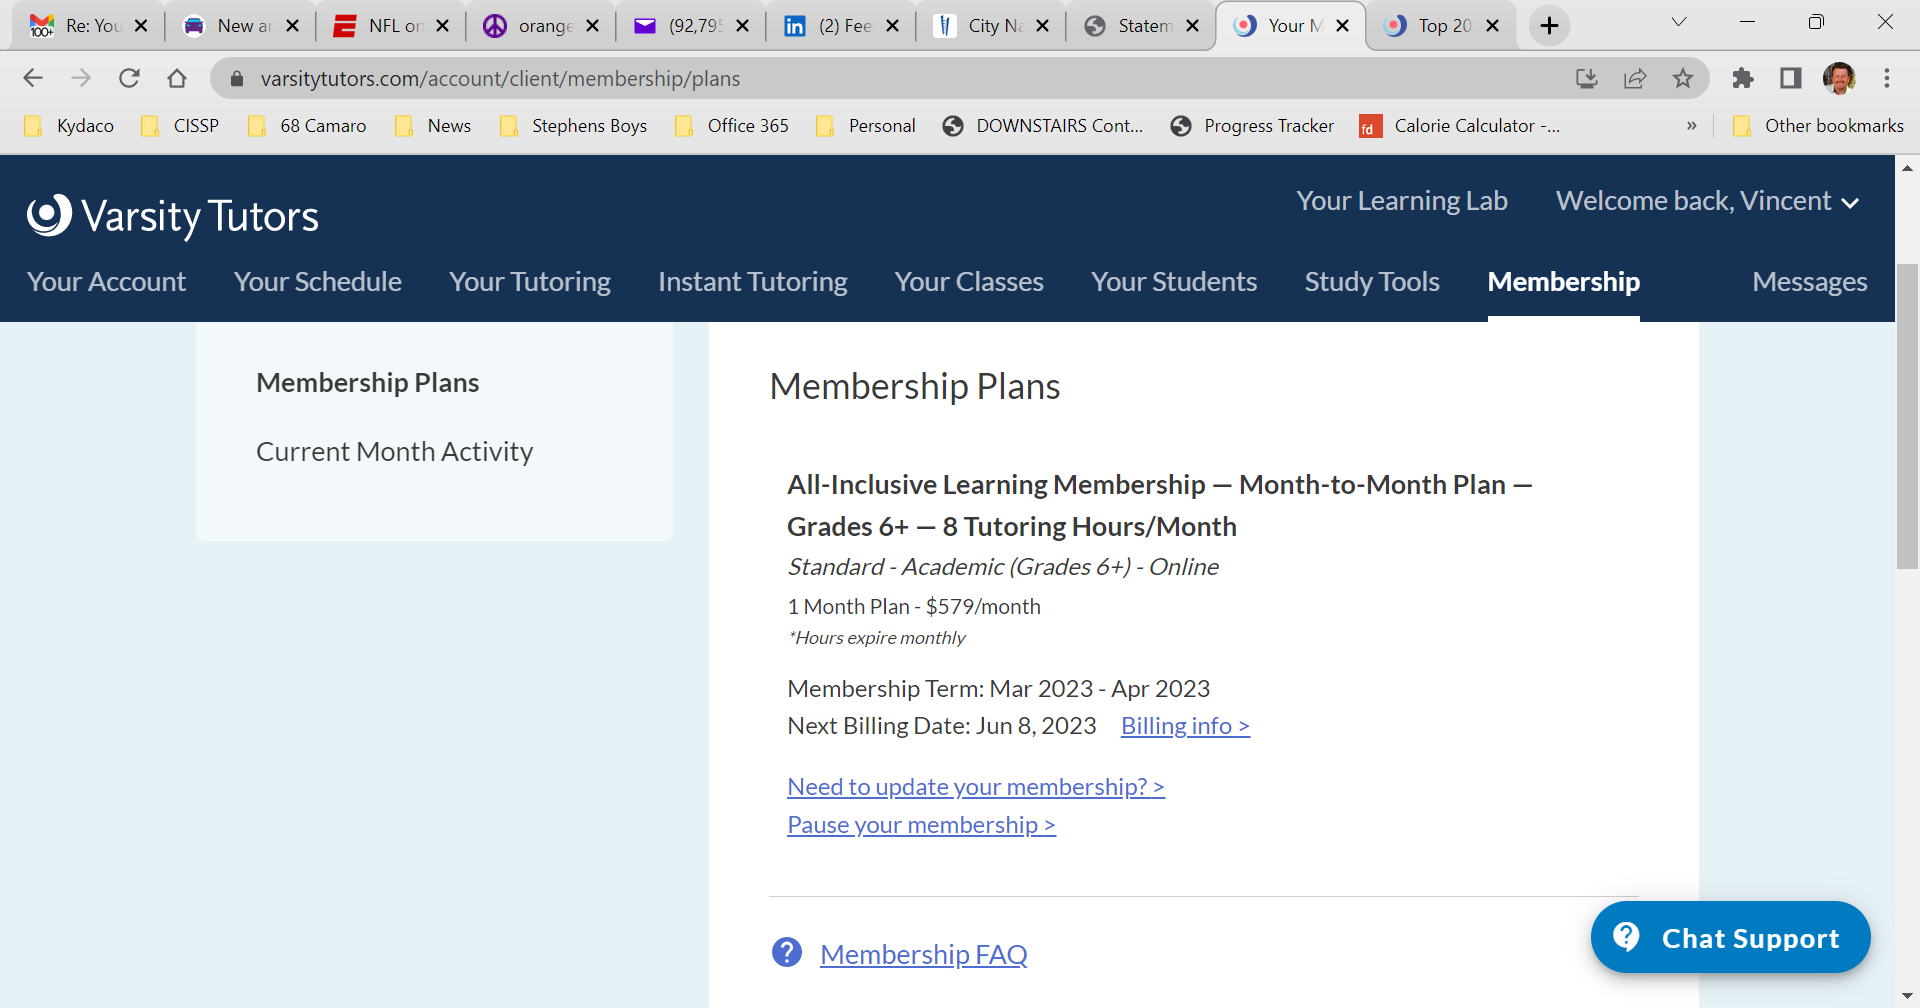 Membership deceitfully showing "1 Month Plan"